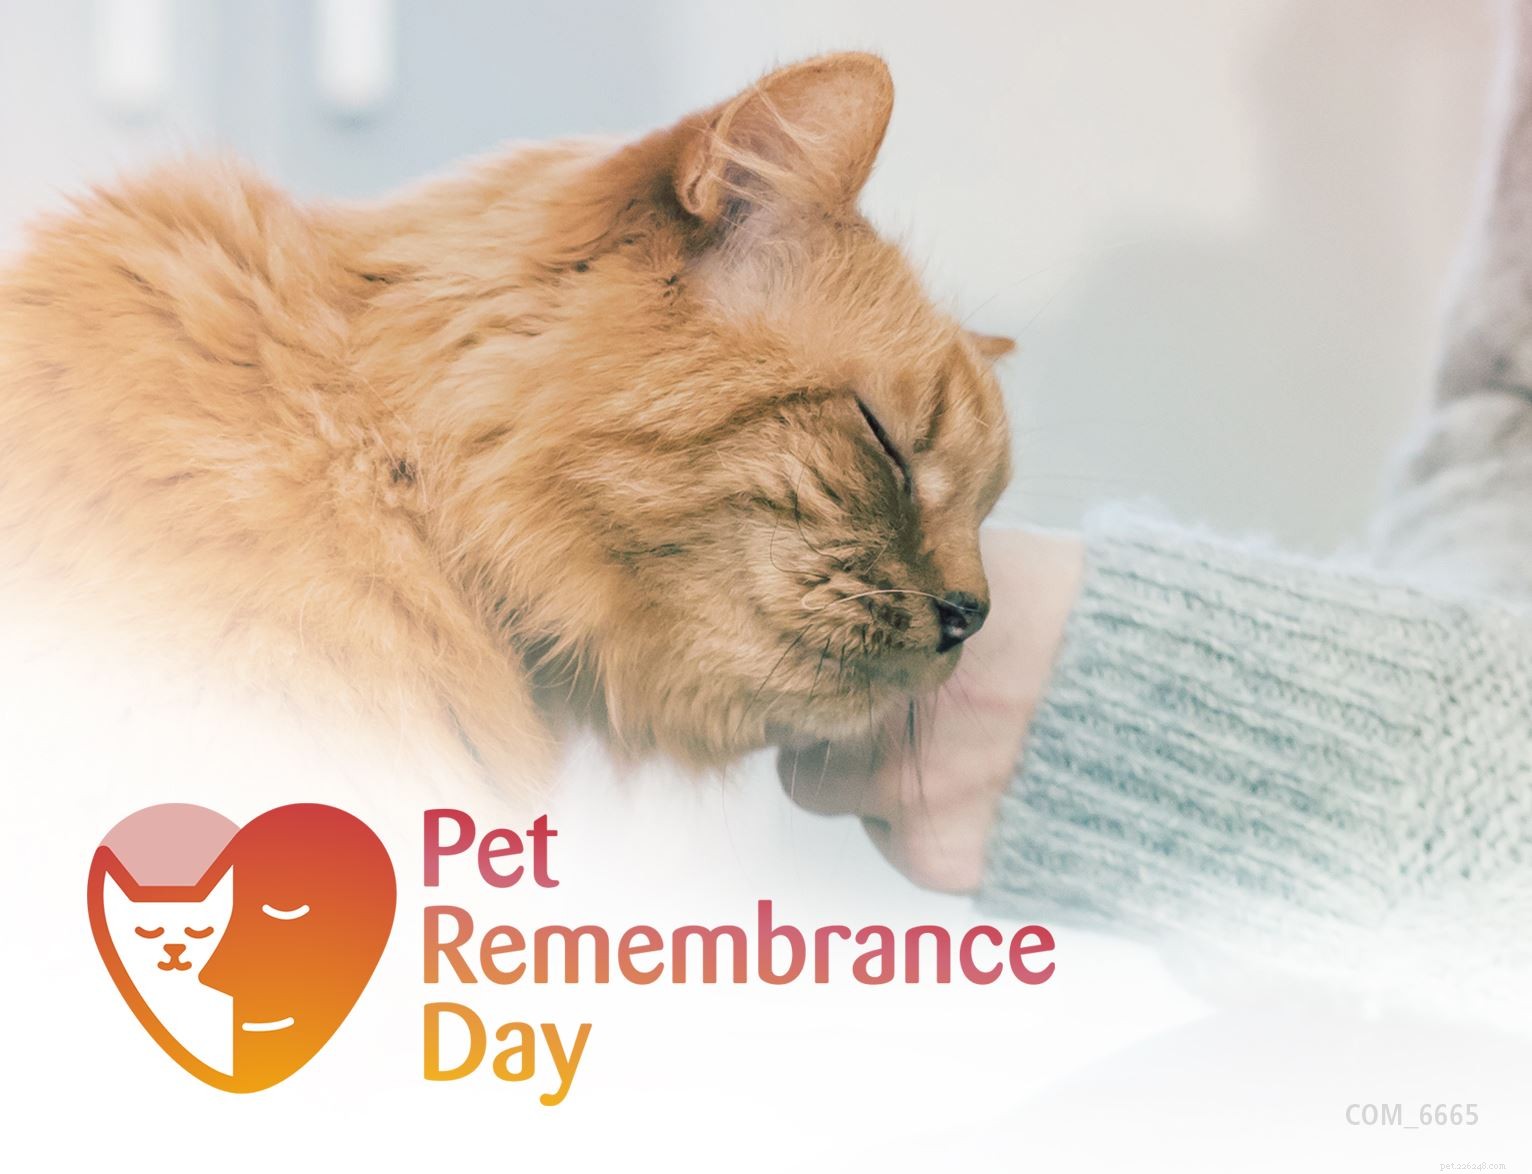 Откройте для себя специальные мемориальные идеи, чтобы почтить память вашего любимого кота в этот День памяти домашних животных